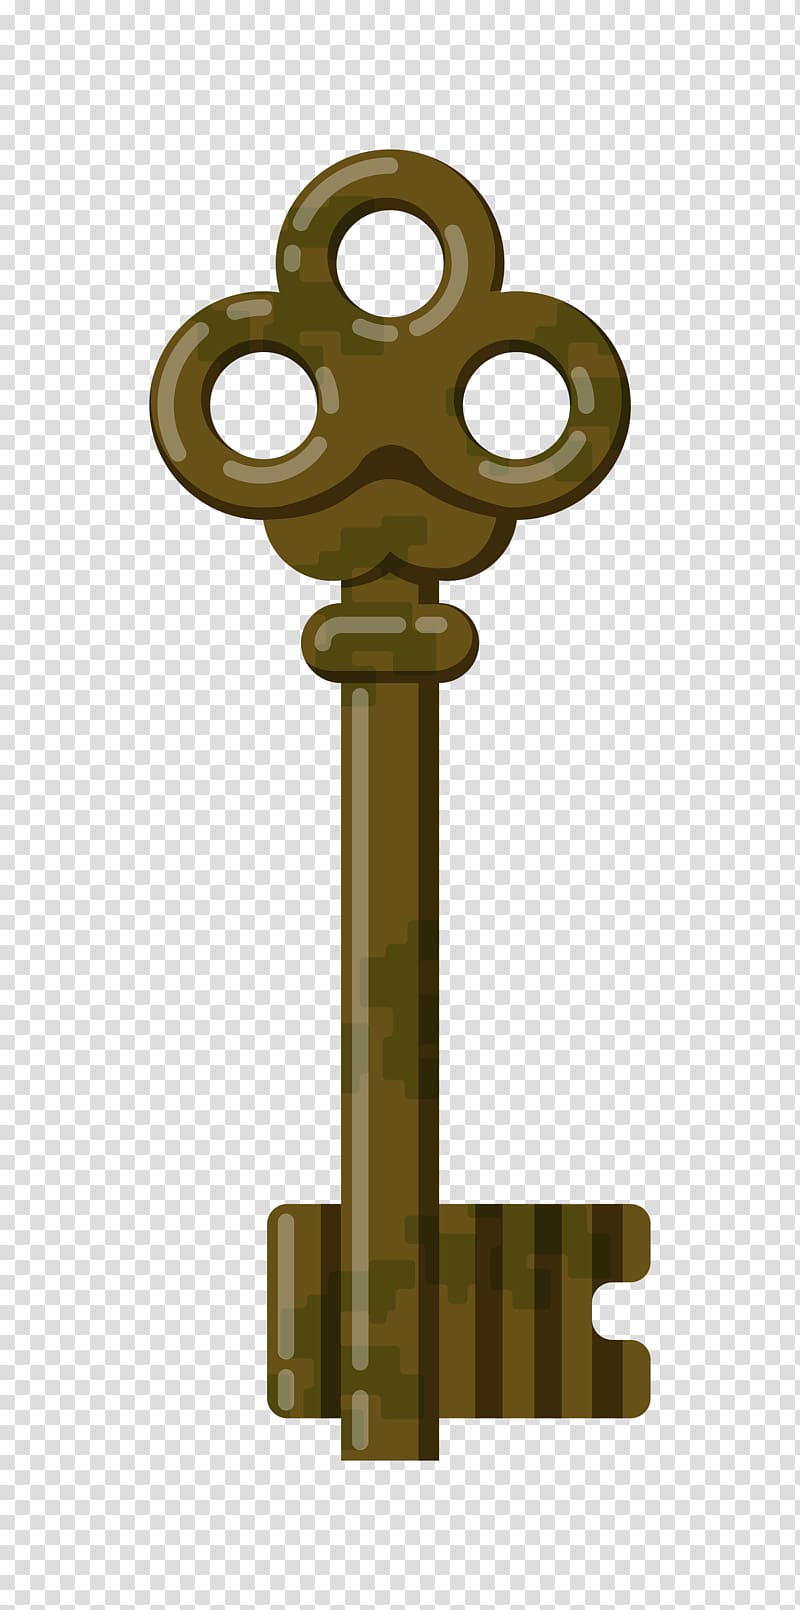 Skeleton key , keys transparent background PNG clipart